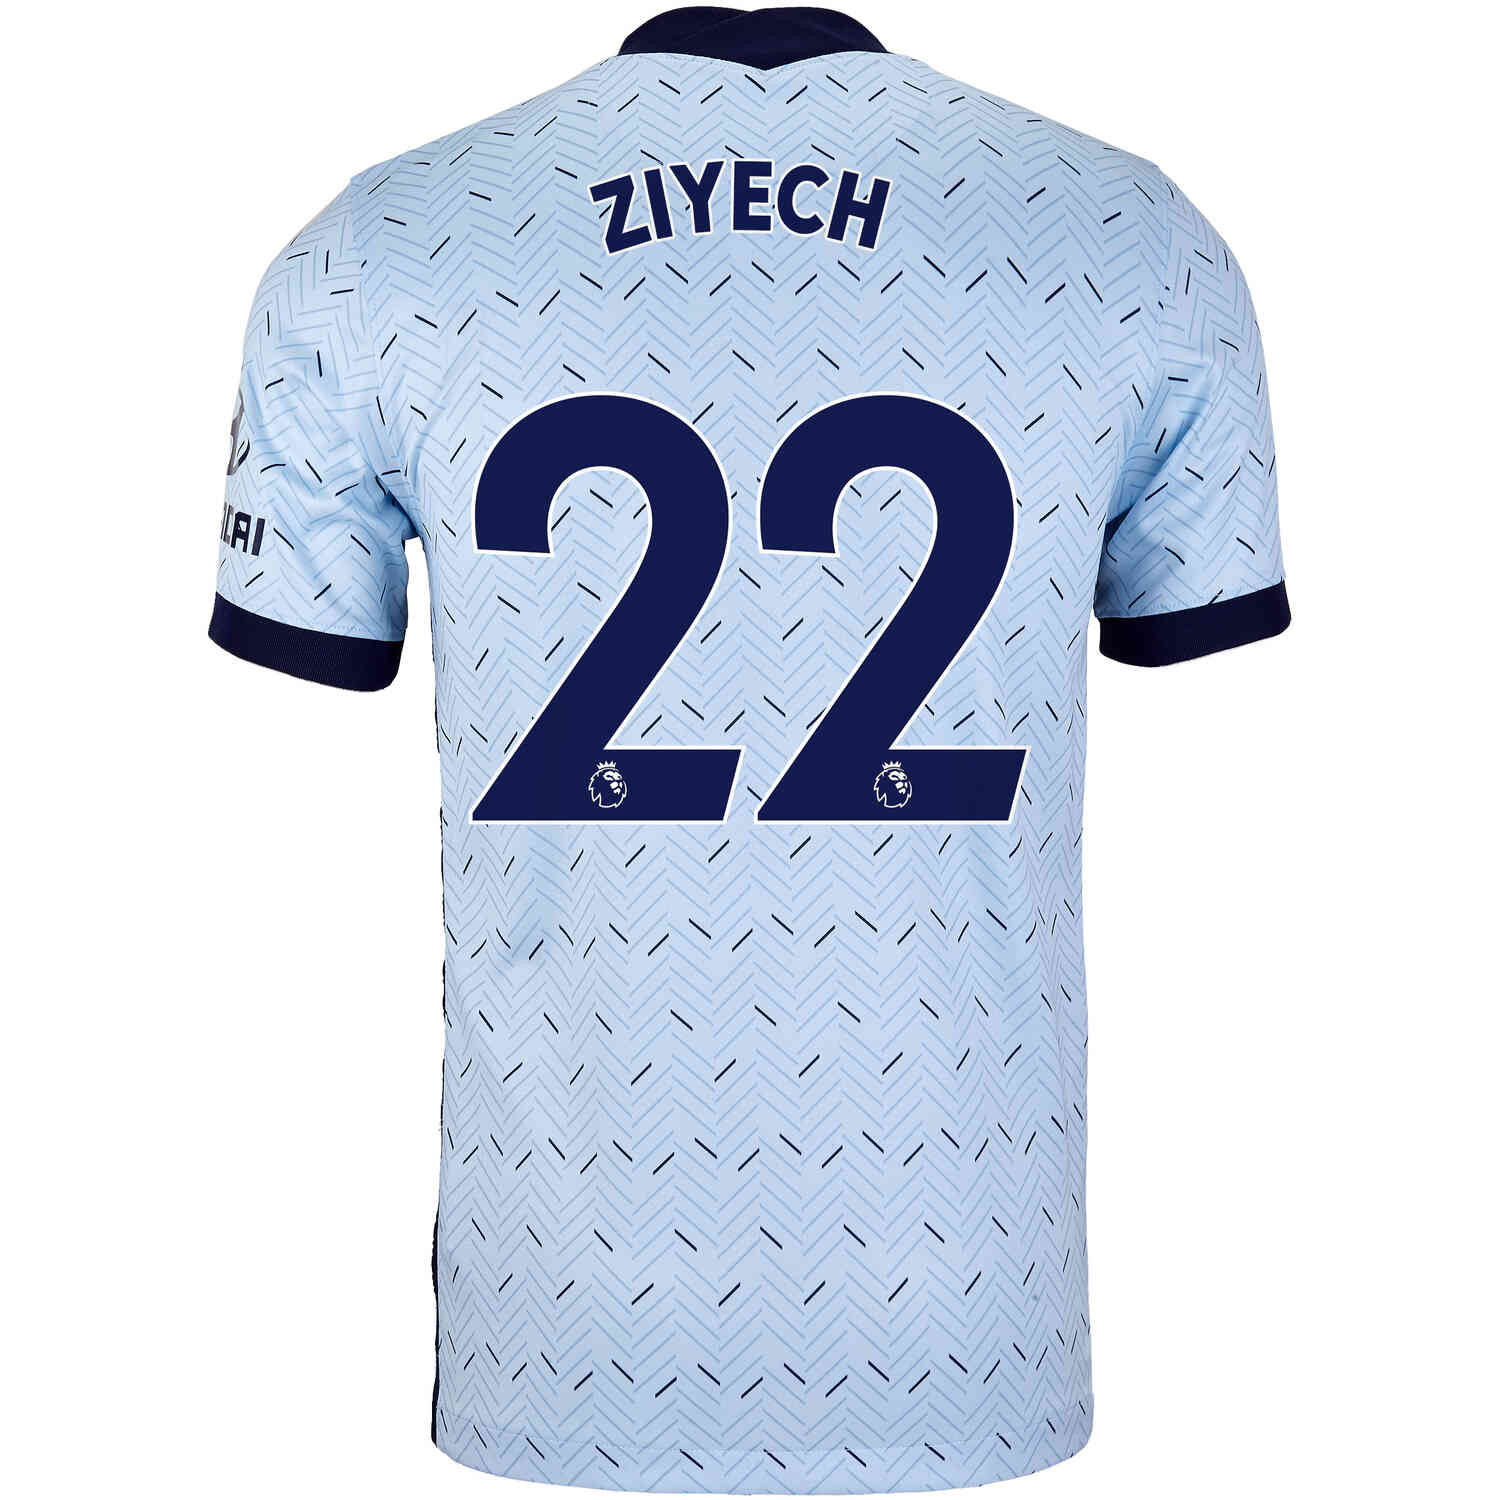 2020/21 Kids Nike Hakim Ziyech Chelsea Away Jersey - SoccerPro